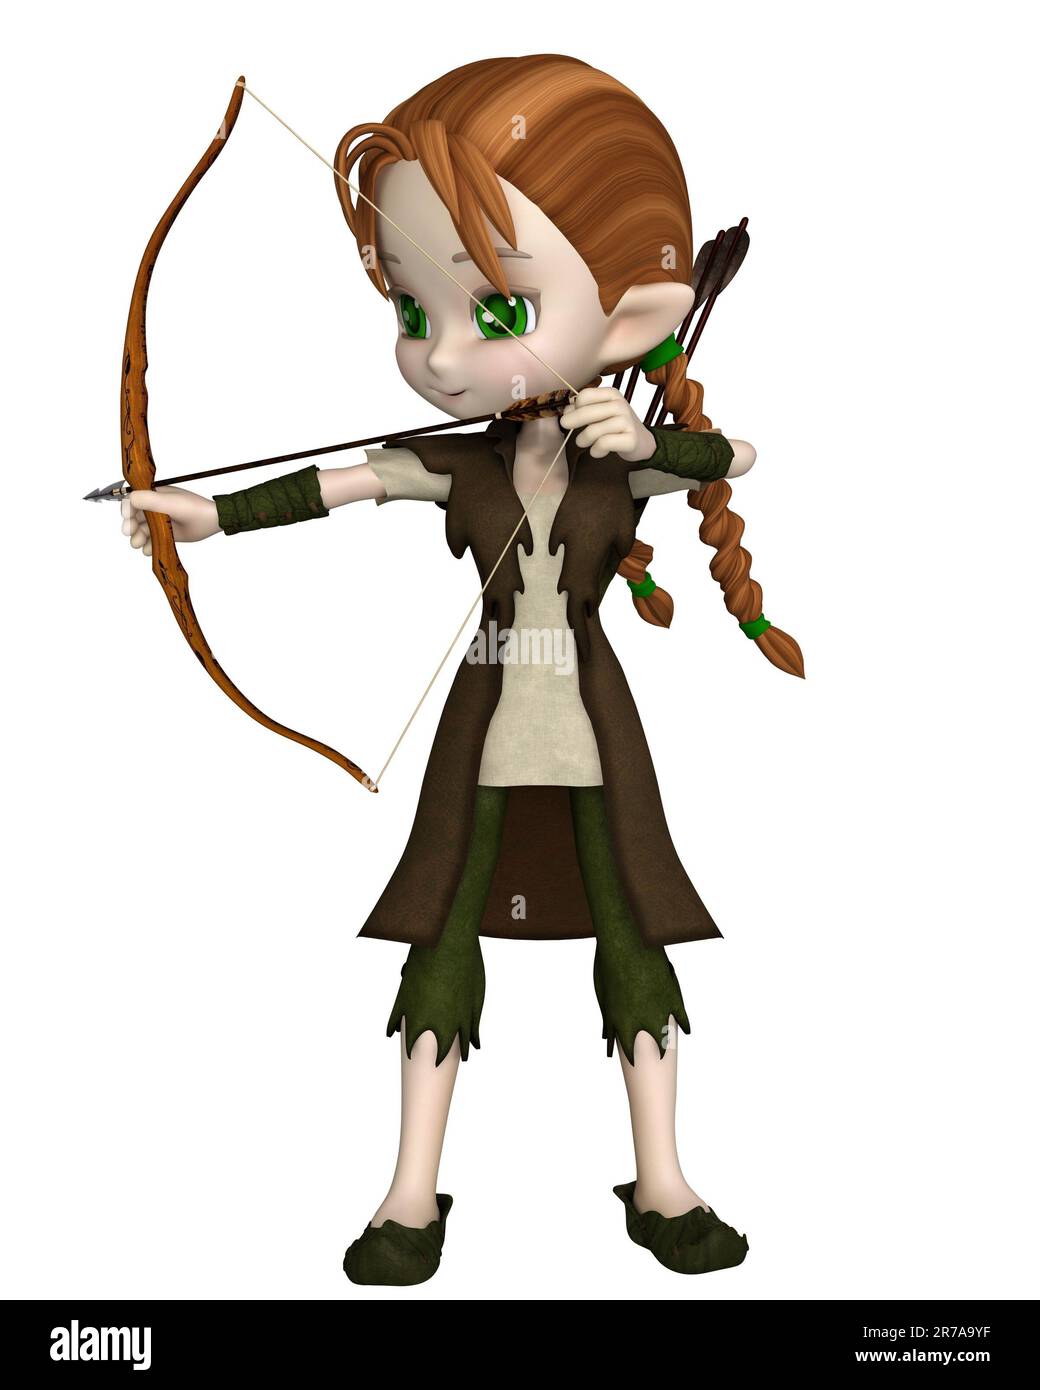 Graziosa Toon Wood Elf Archer Girl che prende la mira Foto Stock